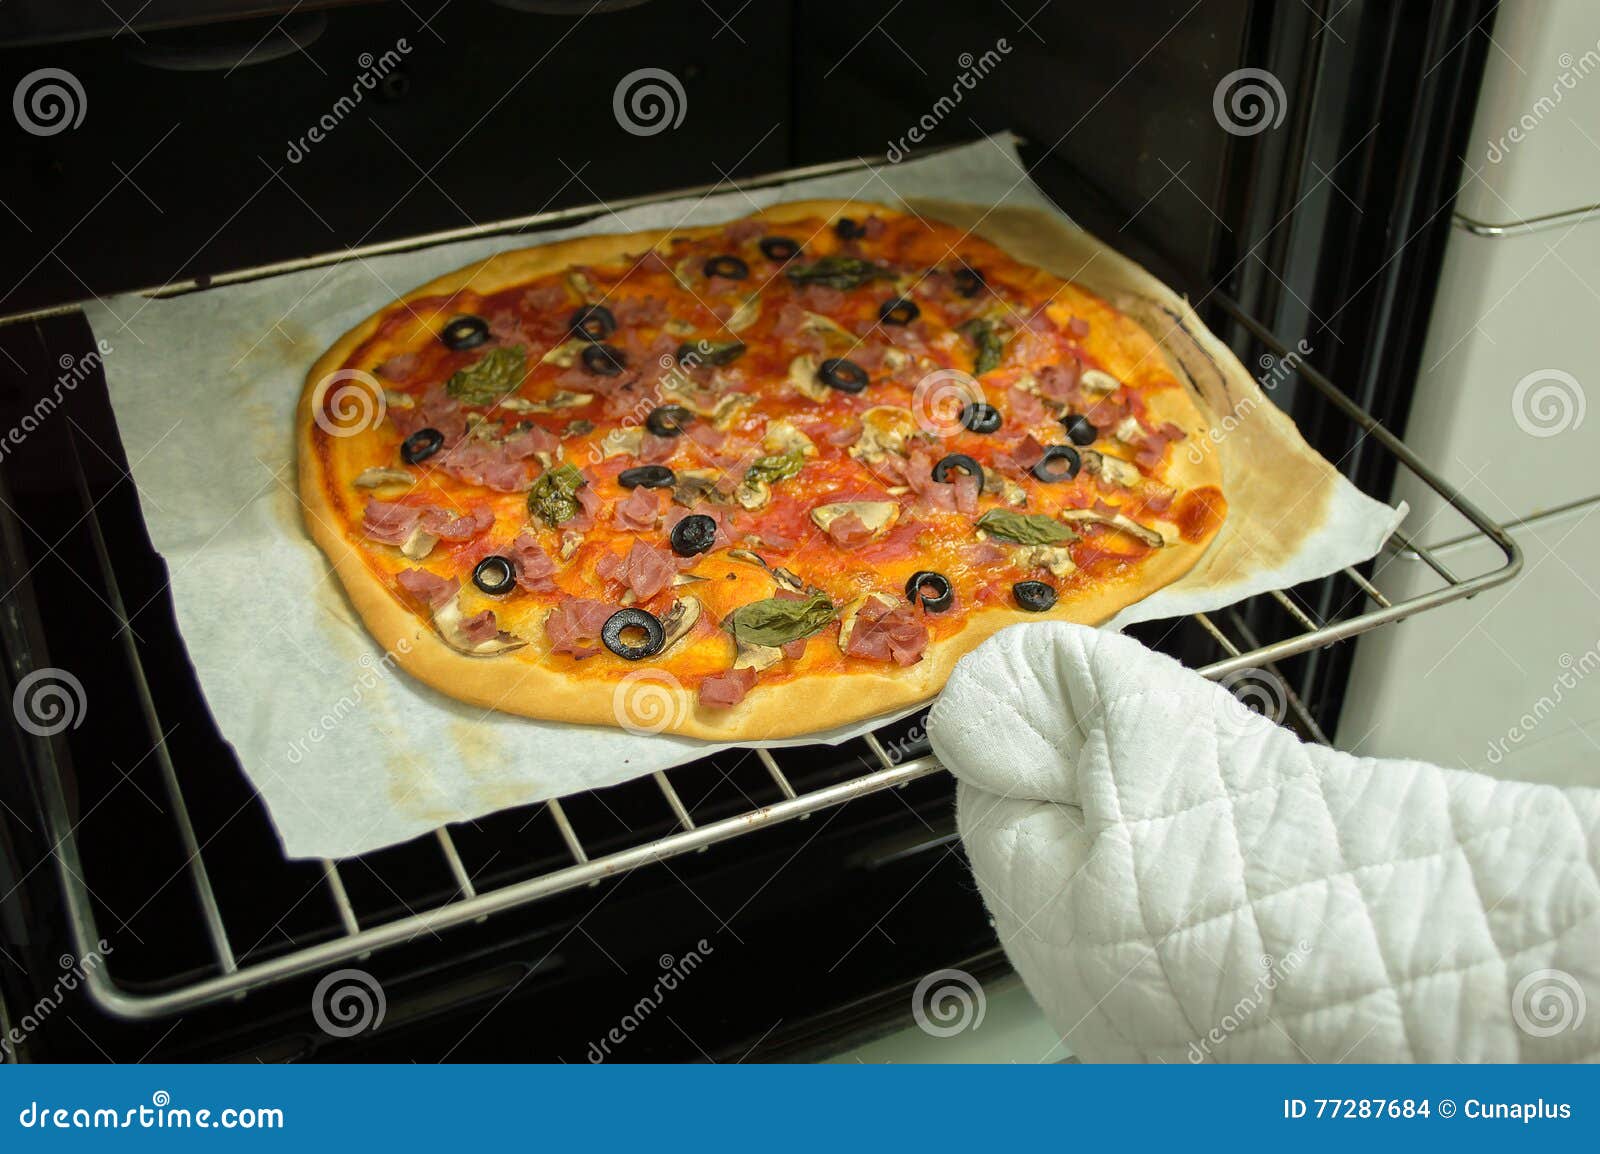 тонкая пицца в духовке температура фото 117